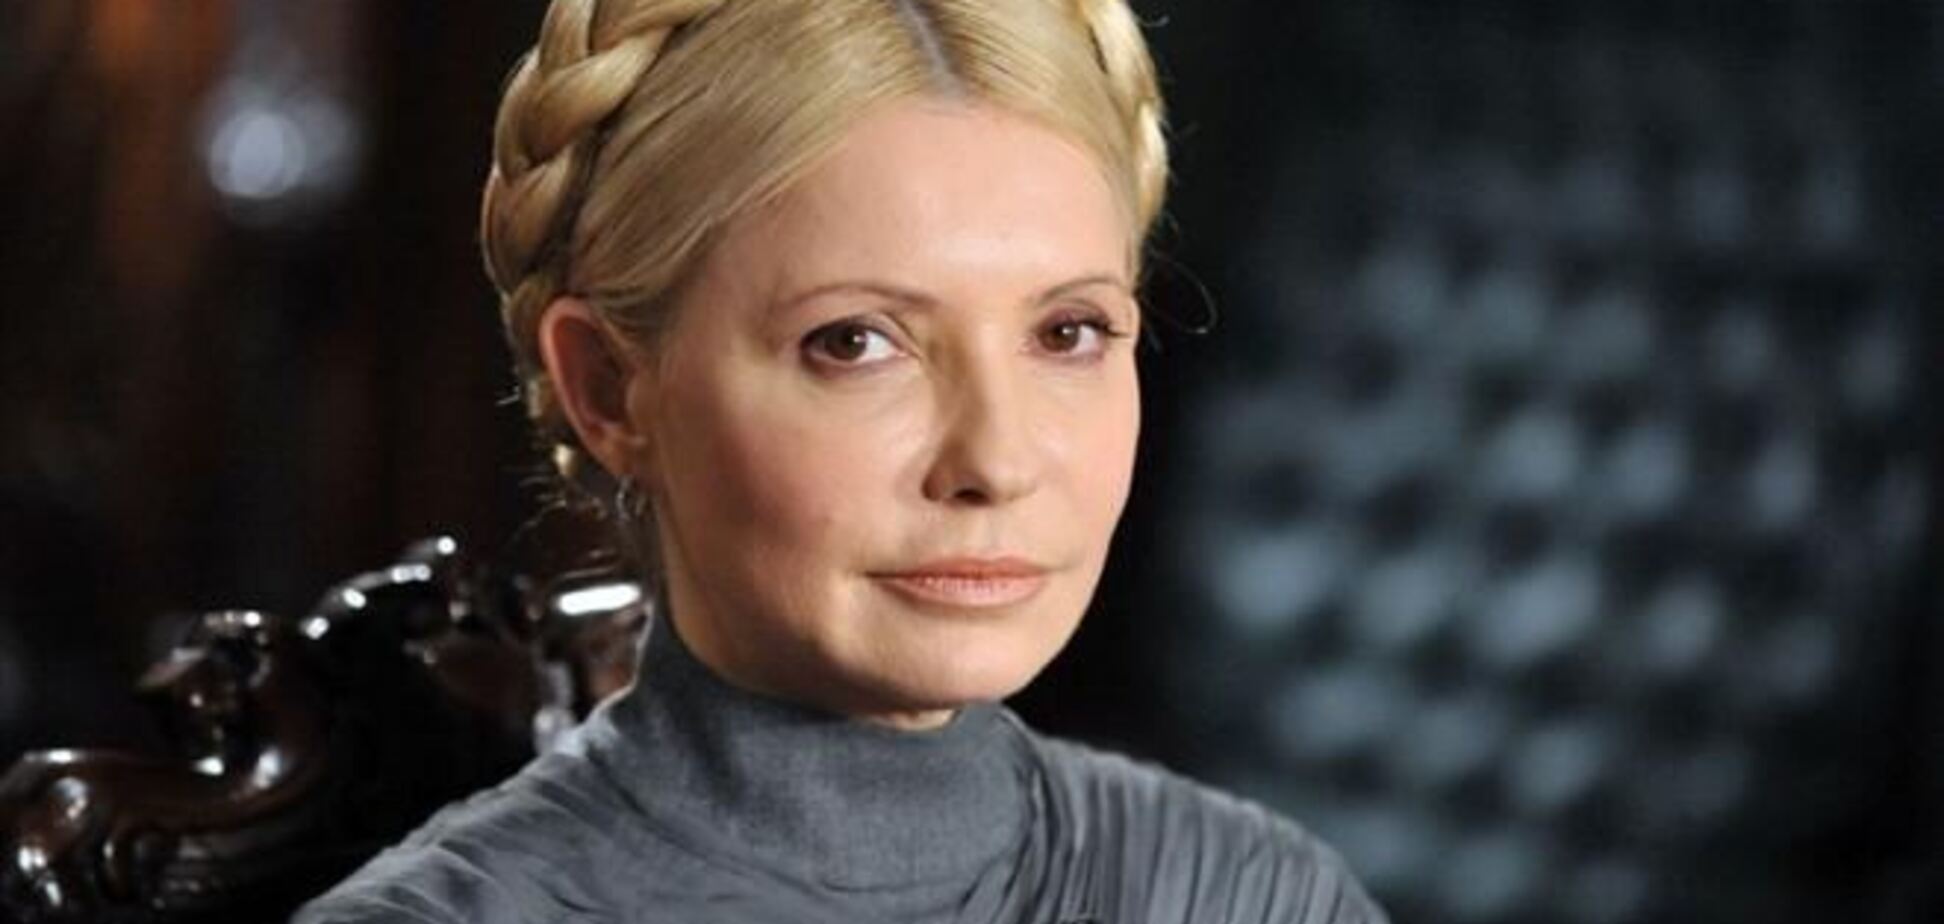 Питання лікування Тимошенко за кордоном - політичний, а не юридичний - експерт